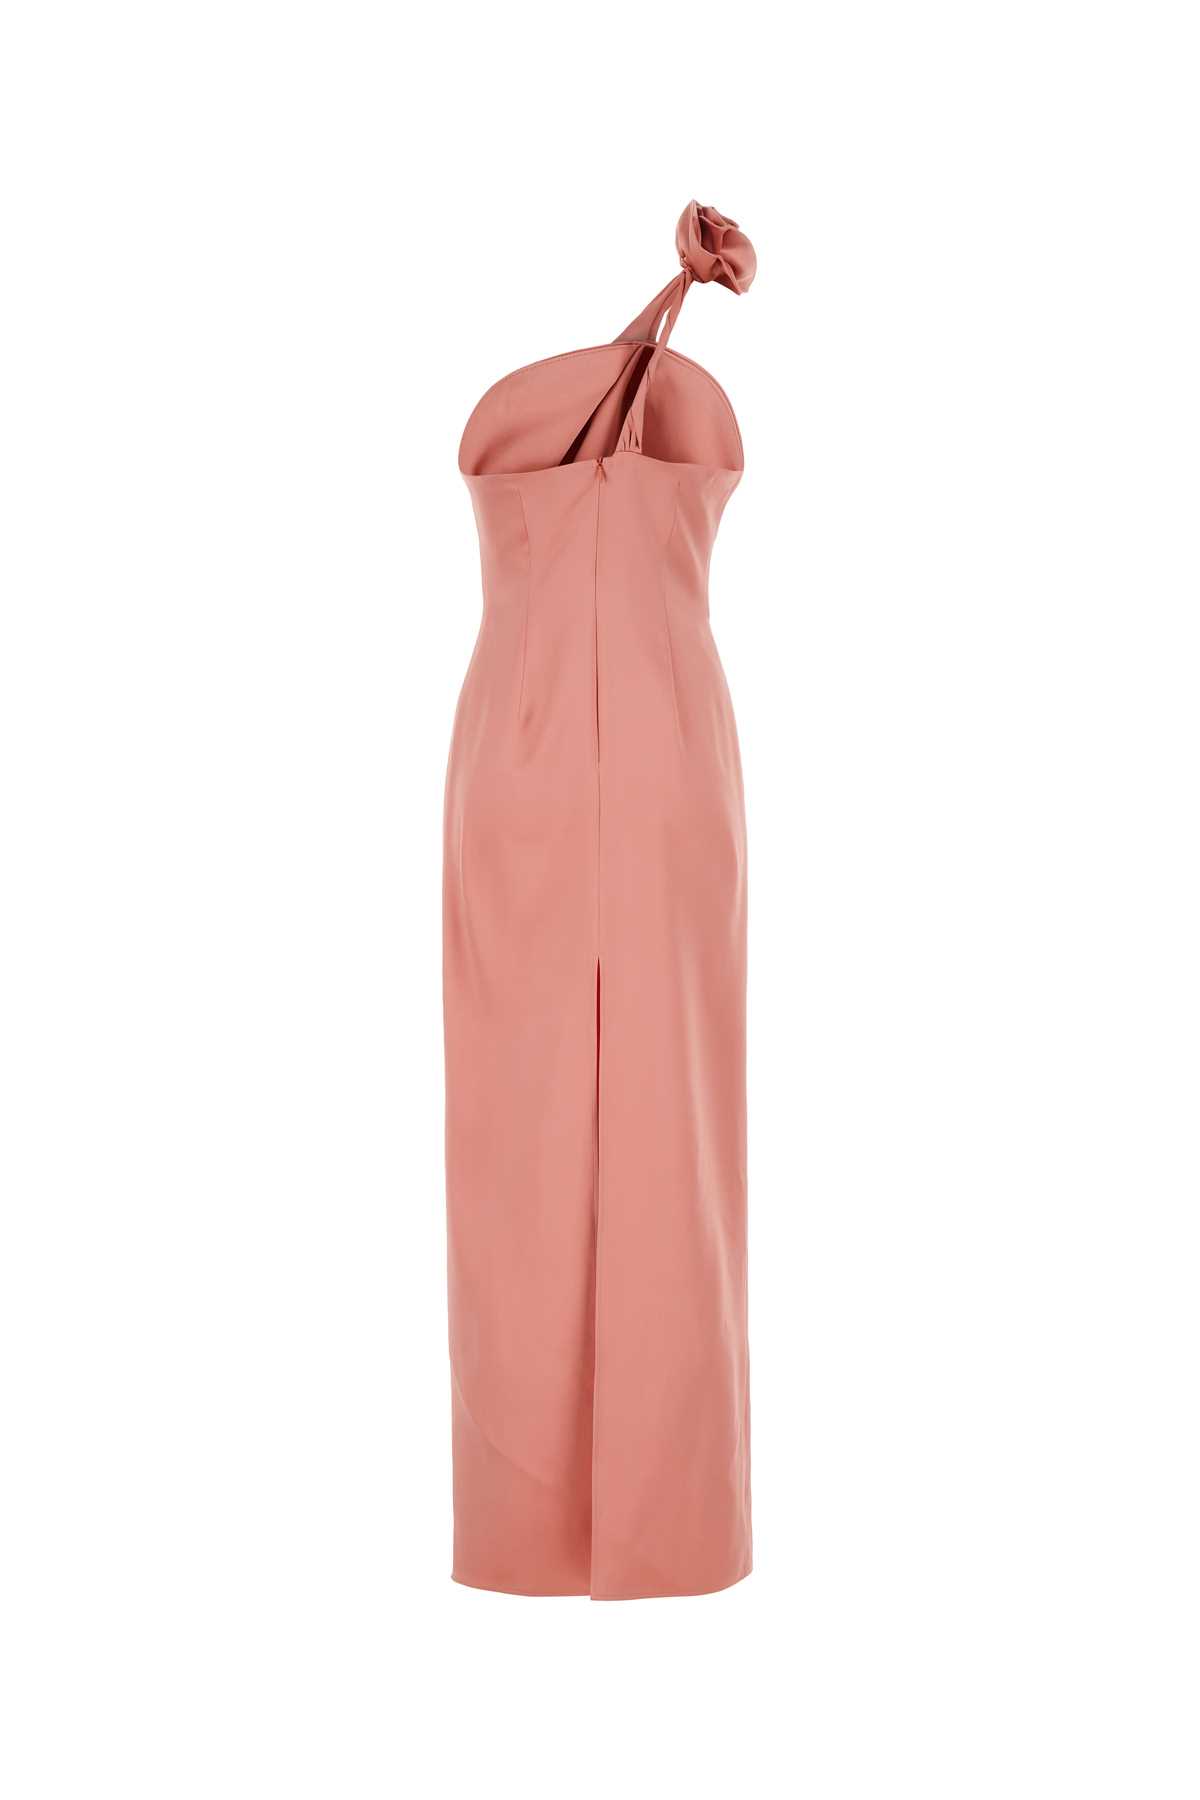 Magda Butrym Pink Silk Dress